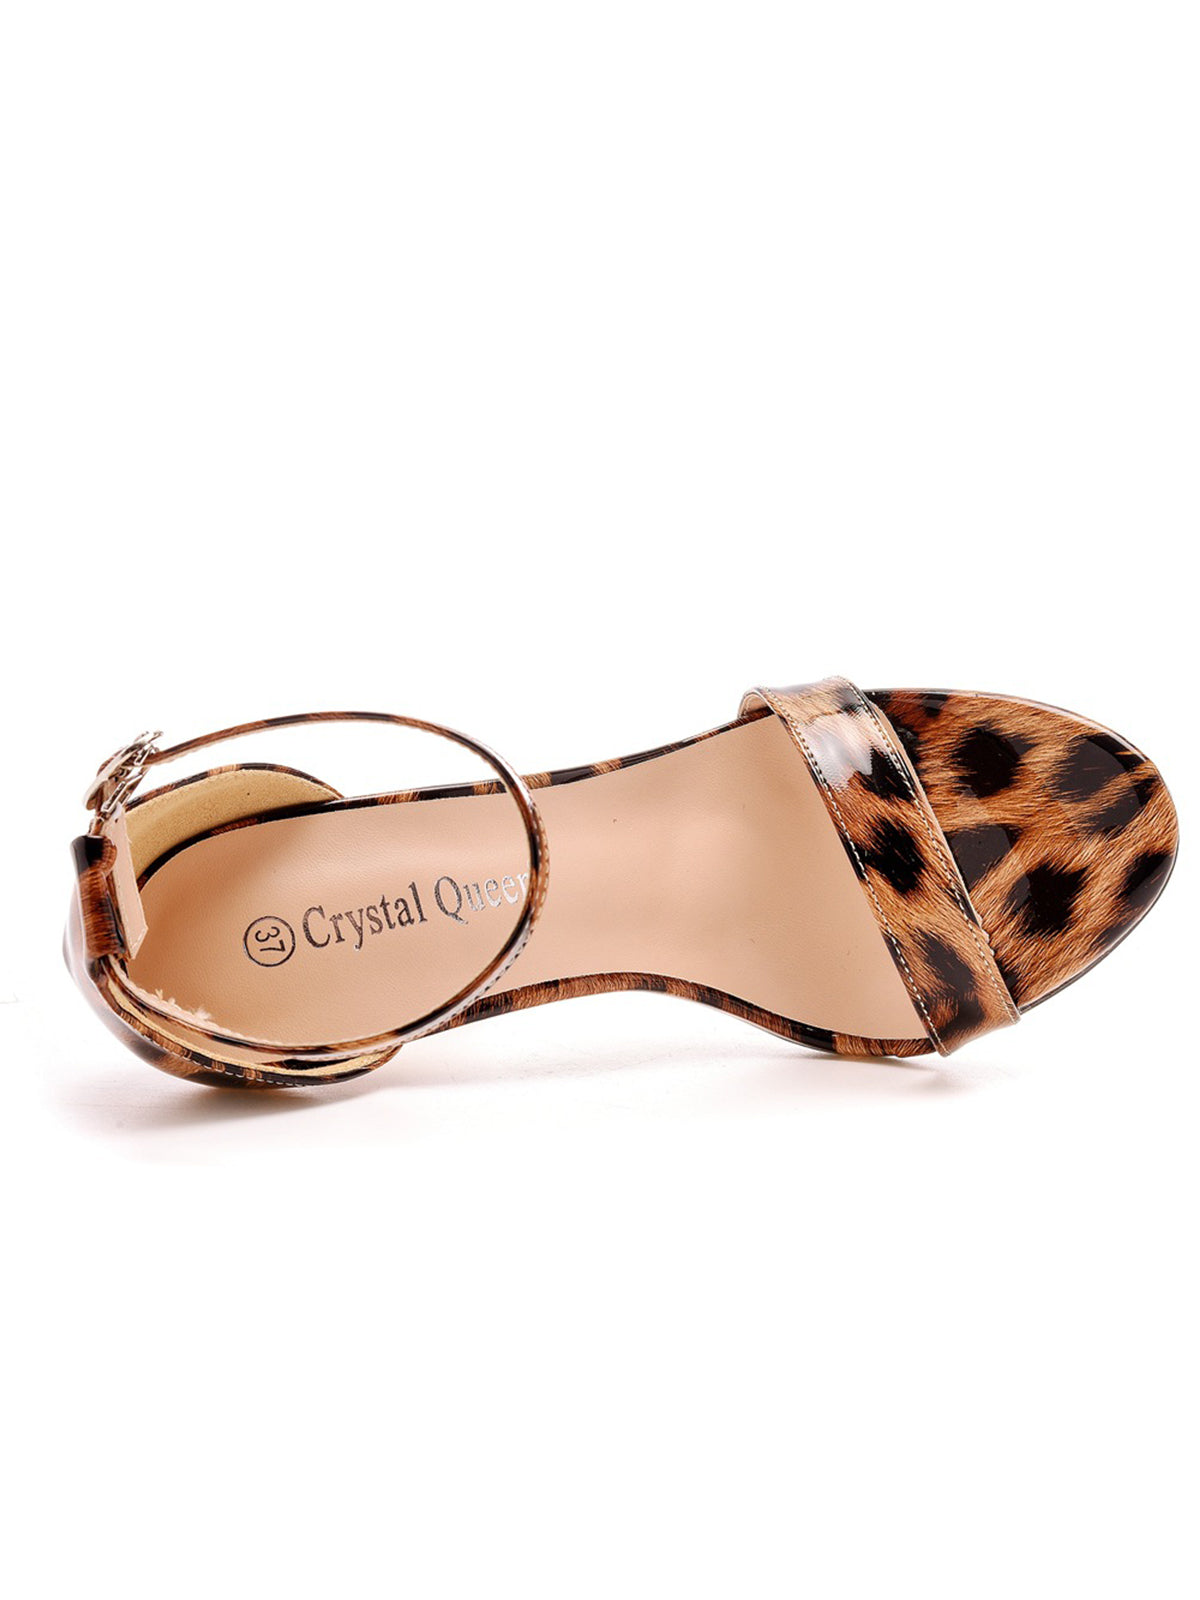 Open Toe Leopard Print Ankle Strap Stiletto High Heels